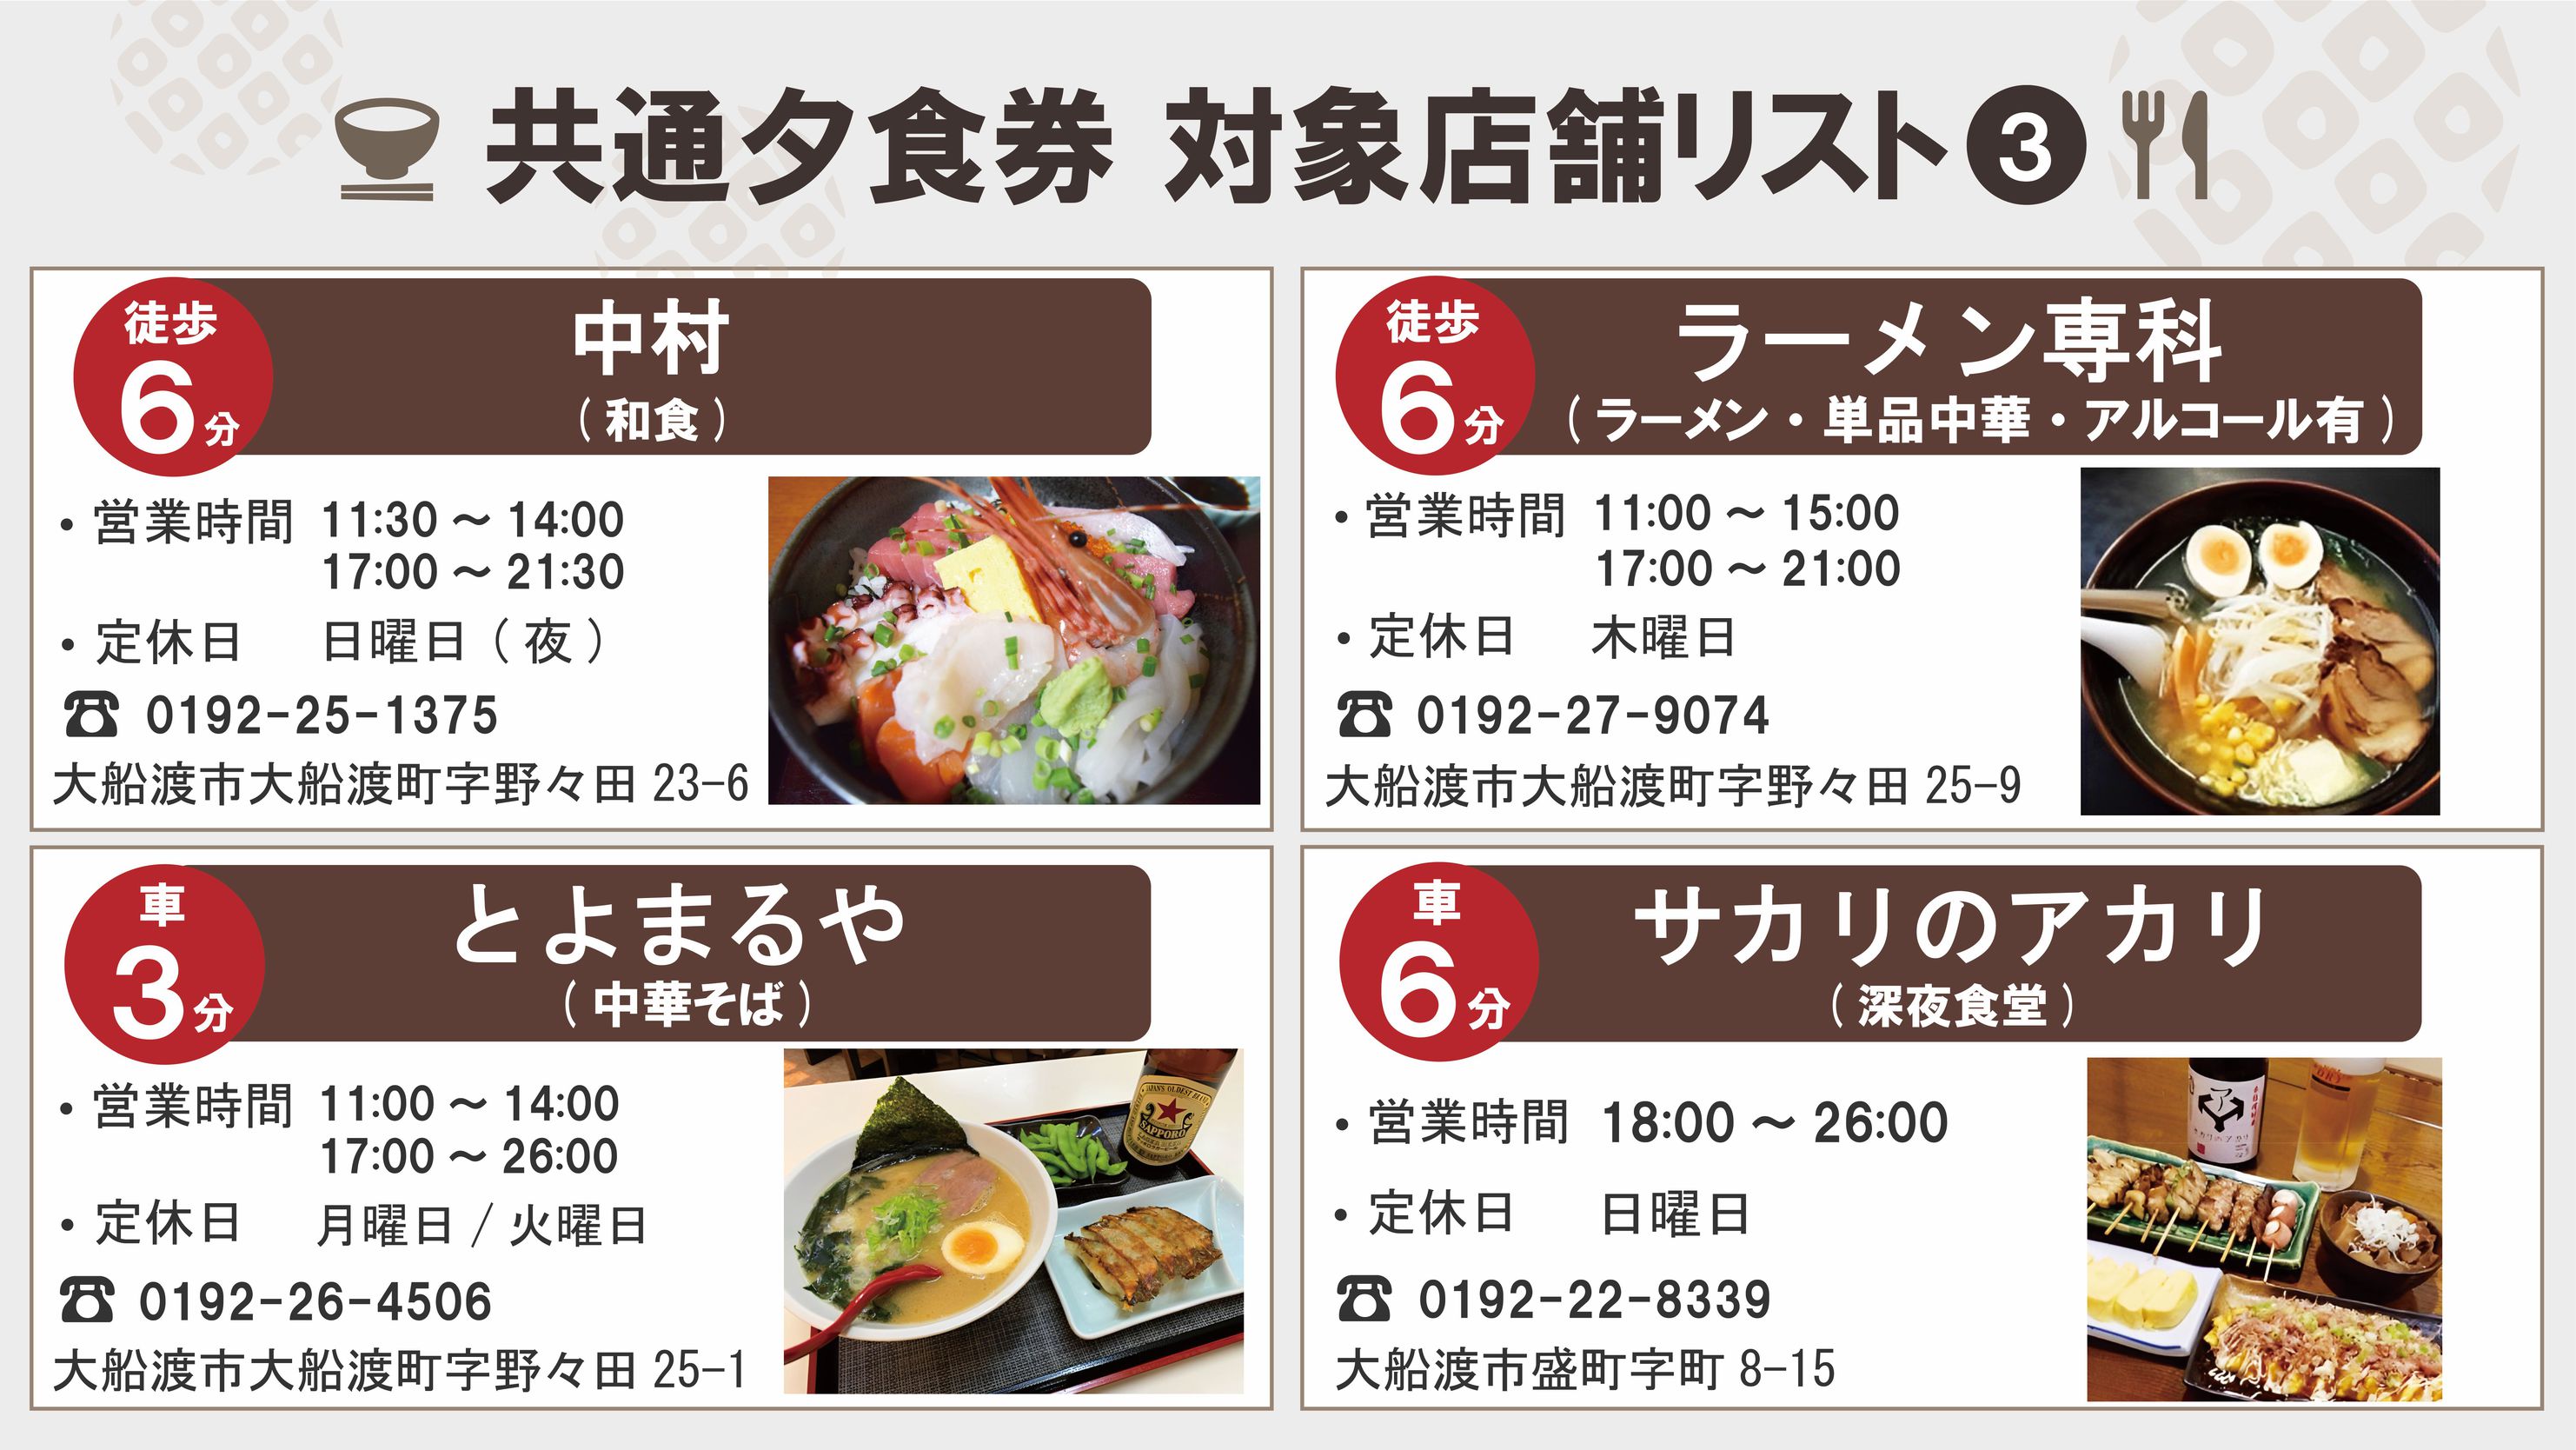 ☆夕食は市内の飲食店で！☆周辺飲食店で使える3000円食事券付プラン【朝食付】